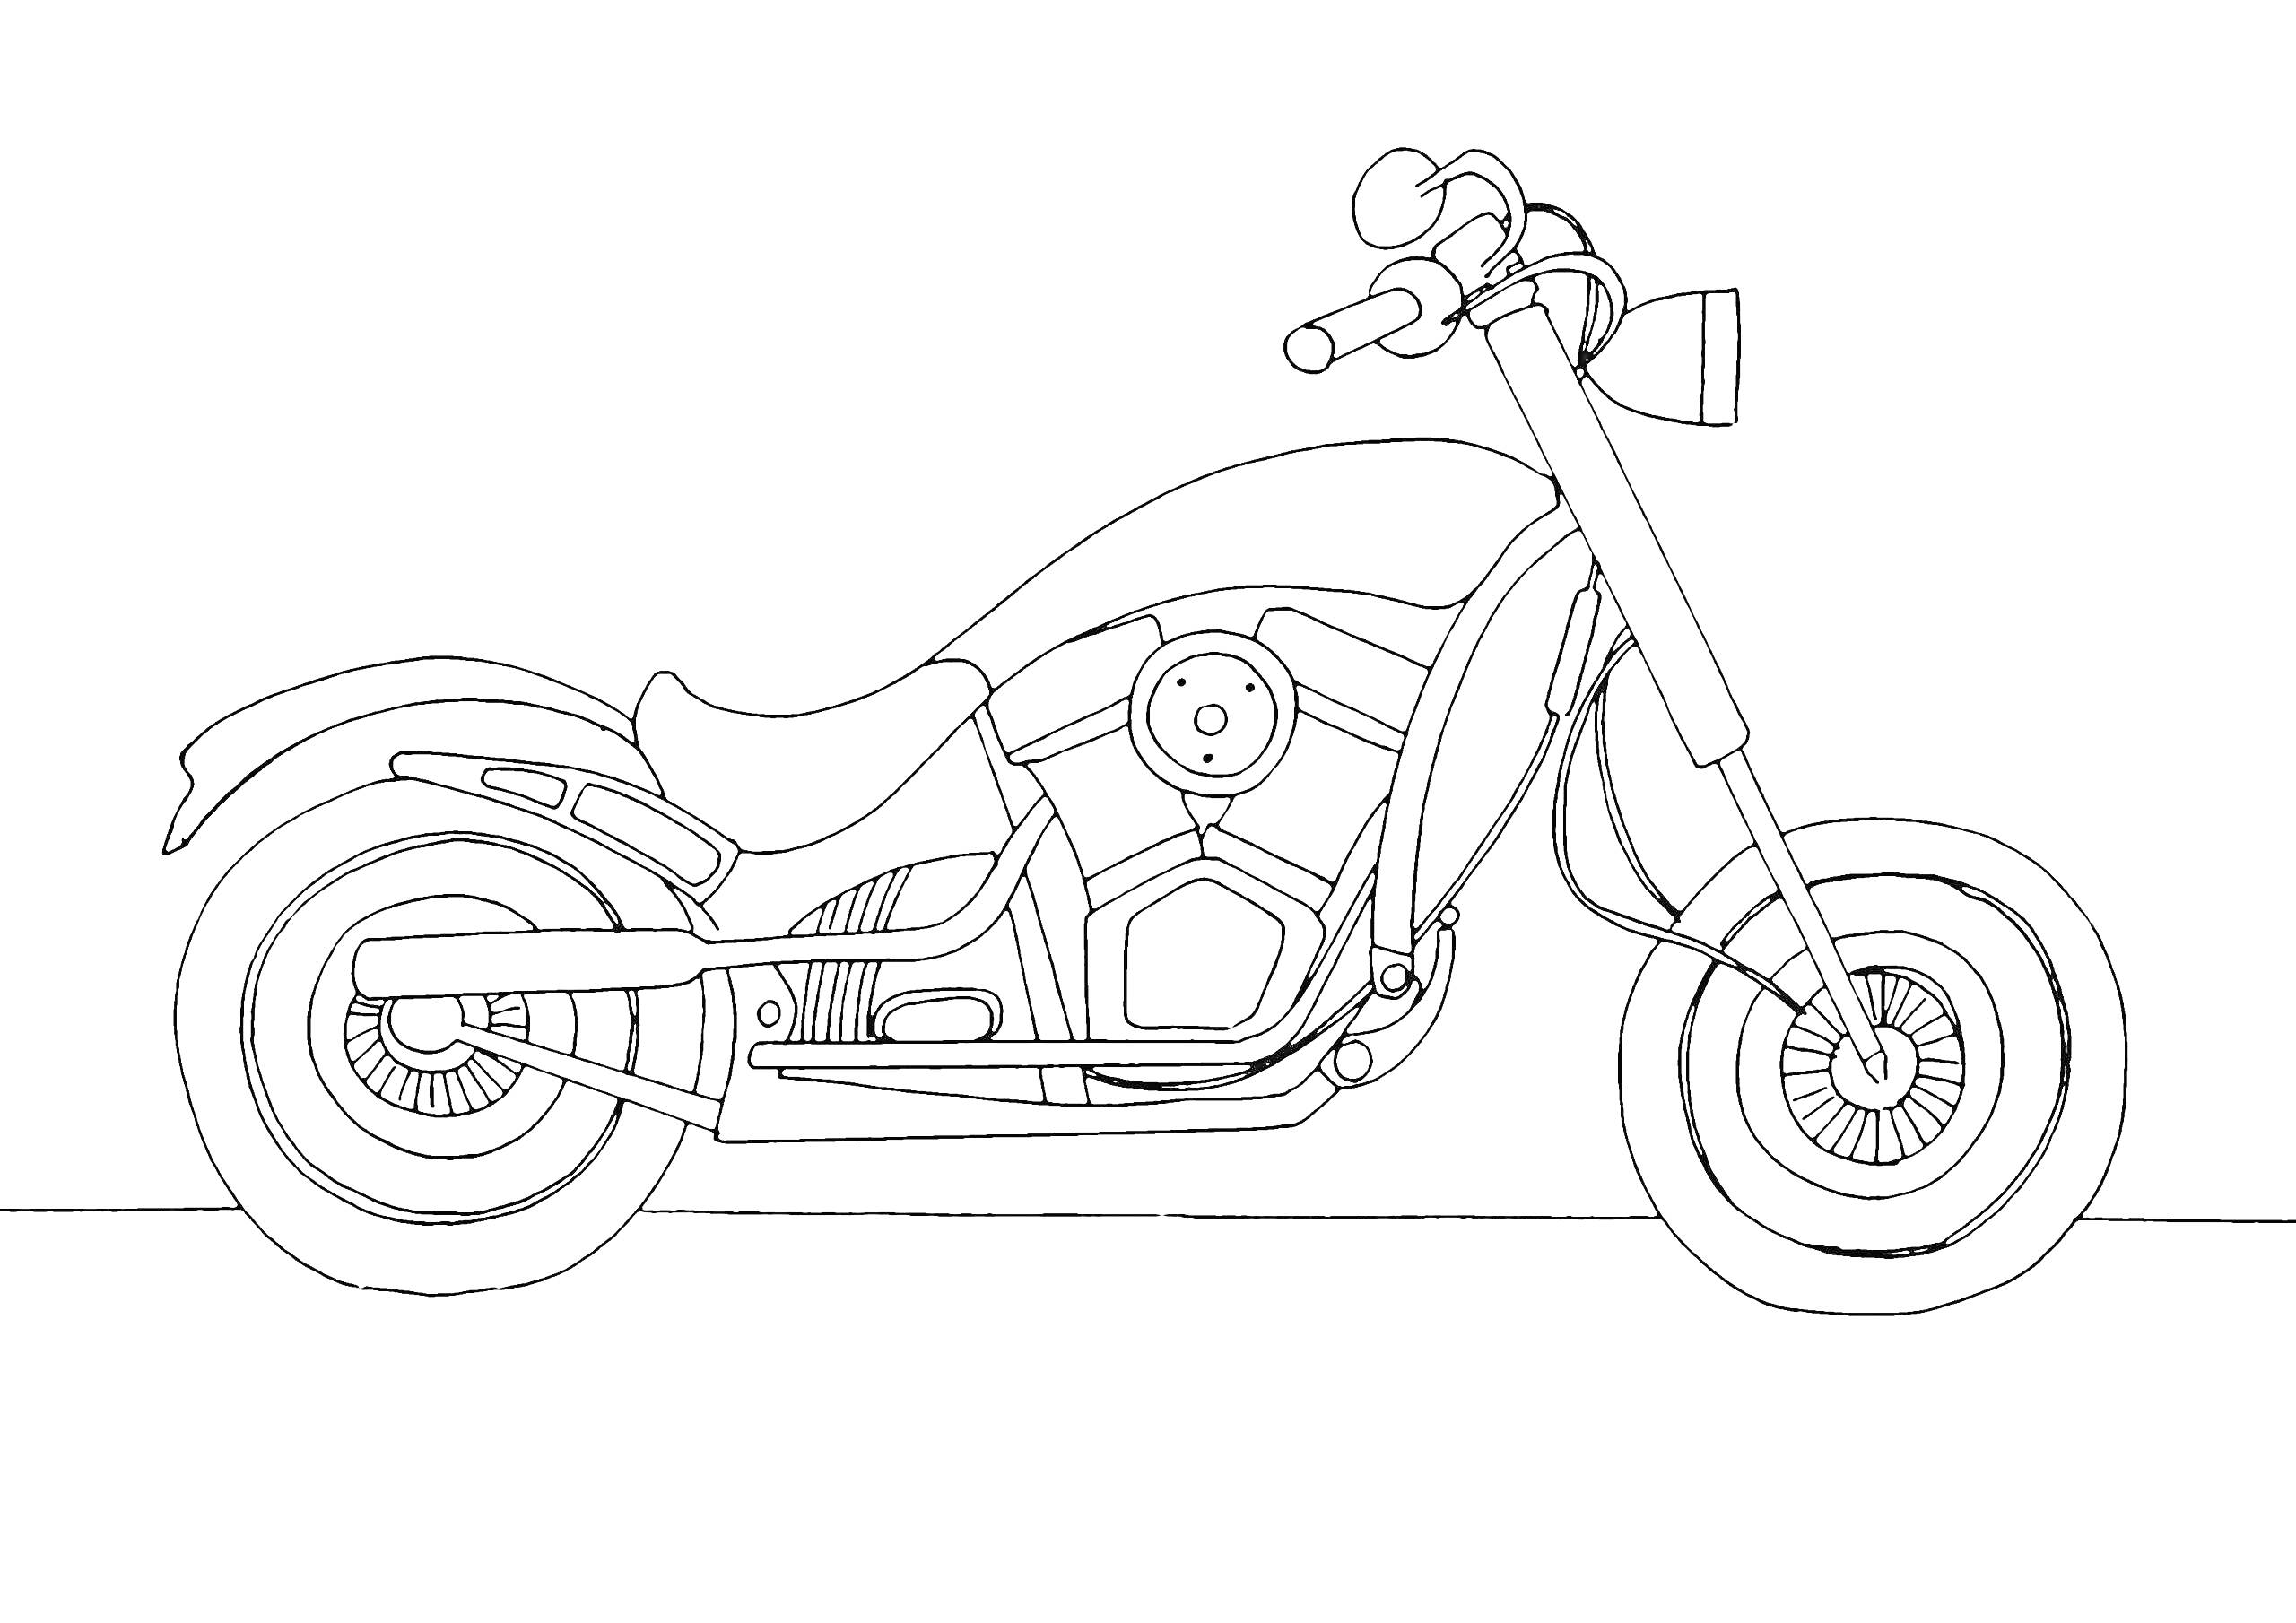 Мотоцикл с ручками, сиденьем, колесами, фарой, бензобаком, выхлопной трубой, рамой и двигателем